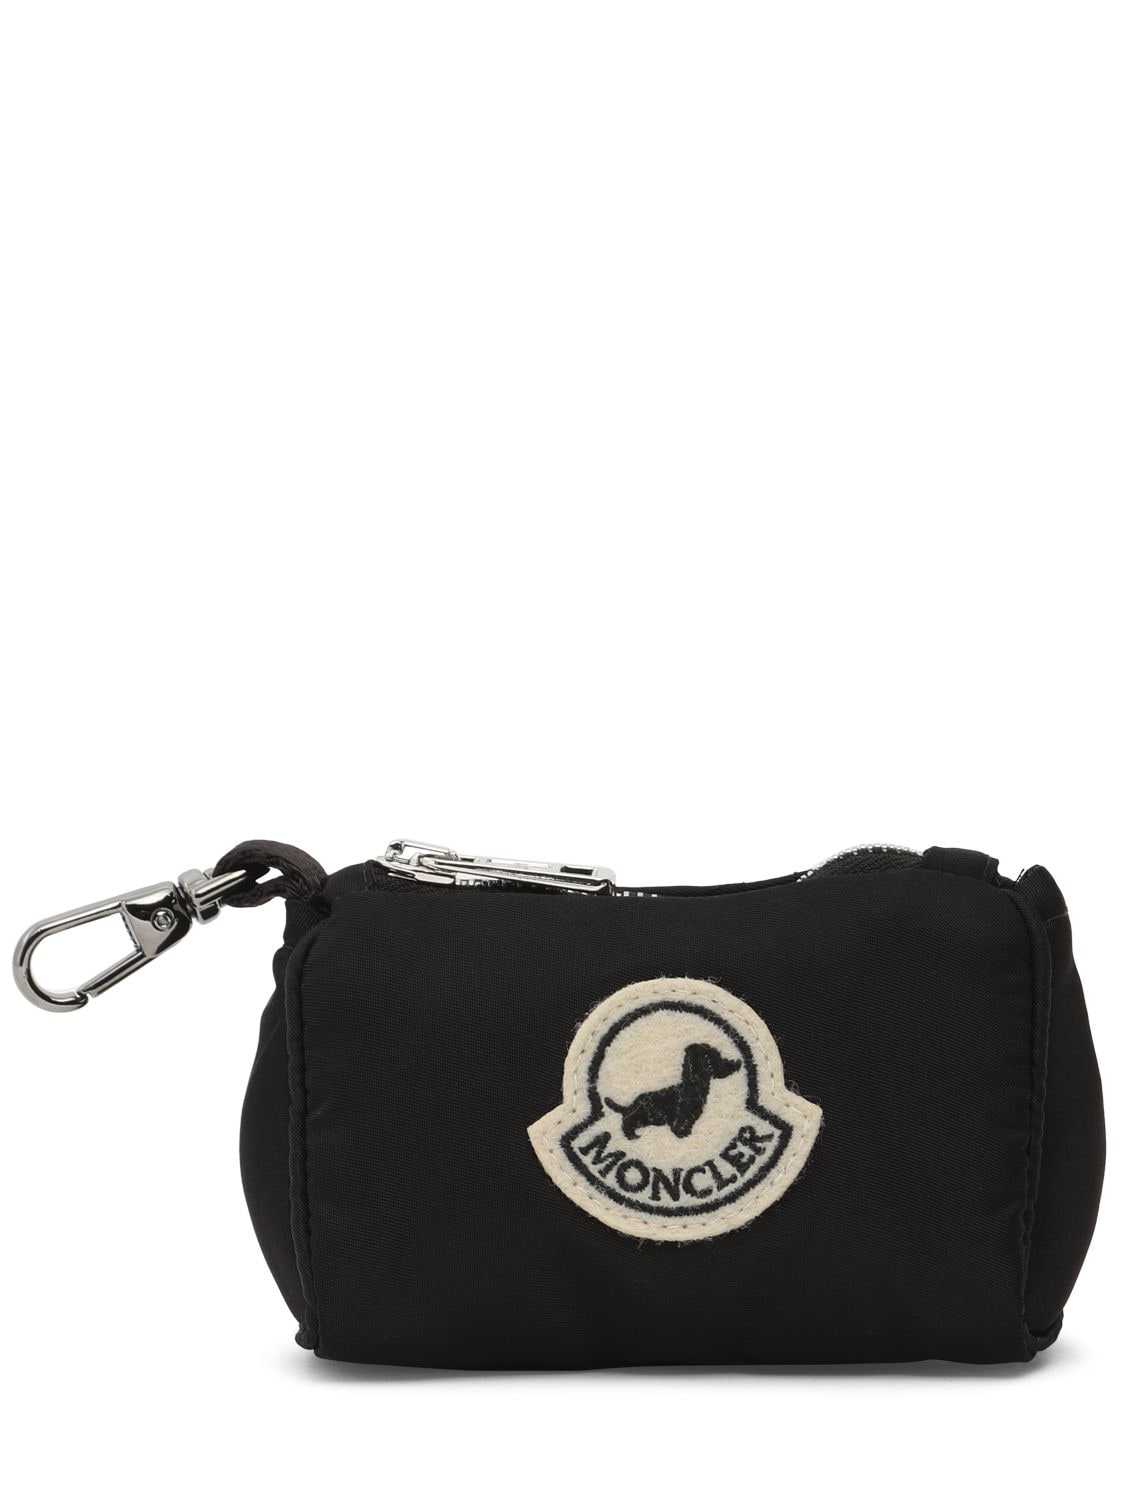 Moncler Genius Moncler X Poldo Satin Dog Bag Holder In Black